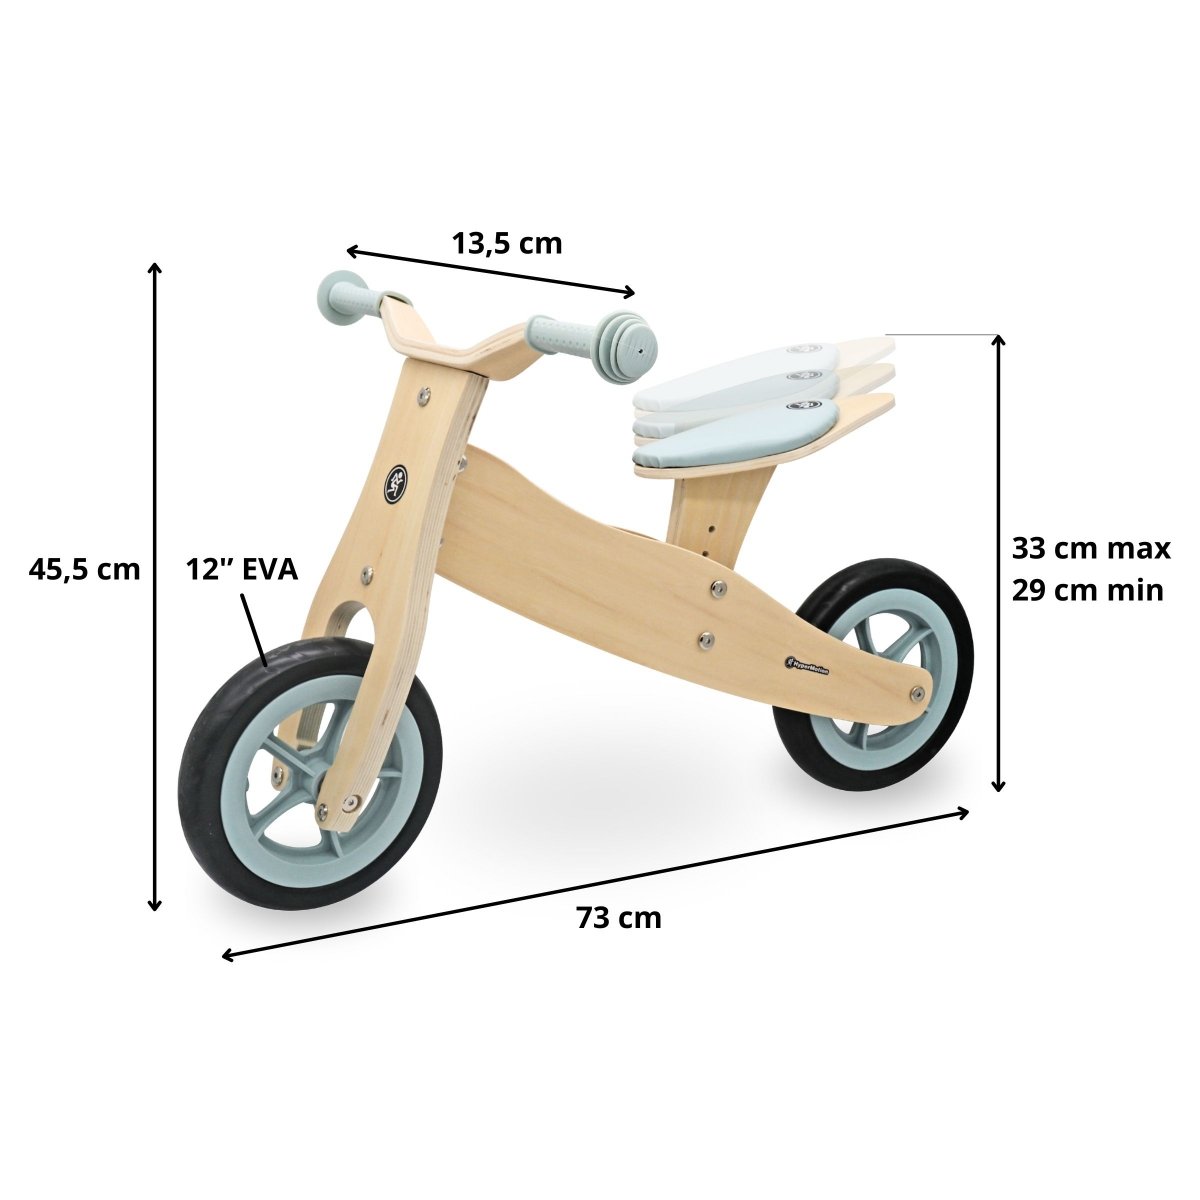 Drewniany rowerek trójkołowy i biegowy 2w1 - HyperMotion PERCY - błękitny